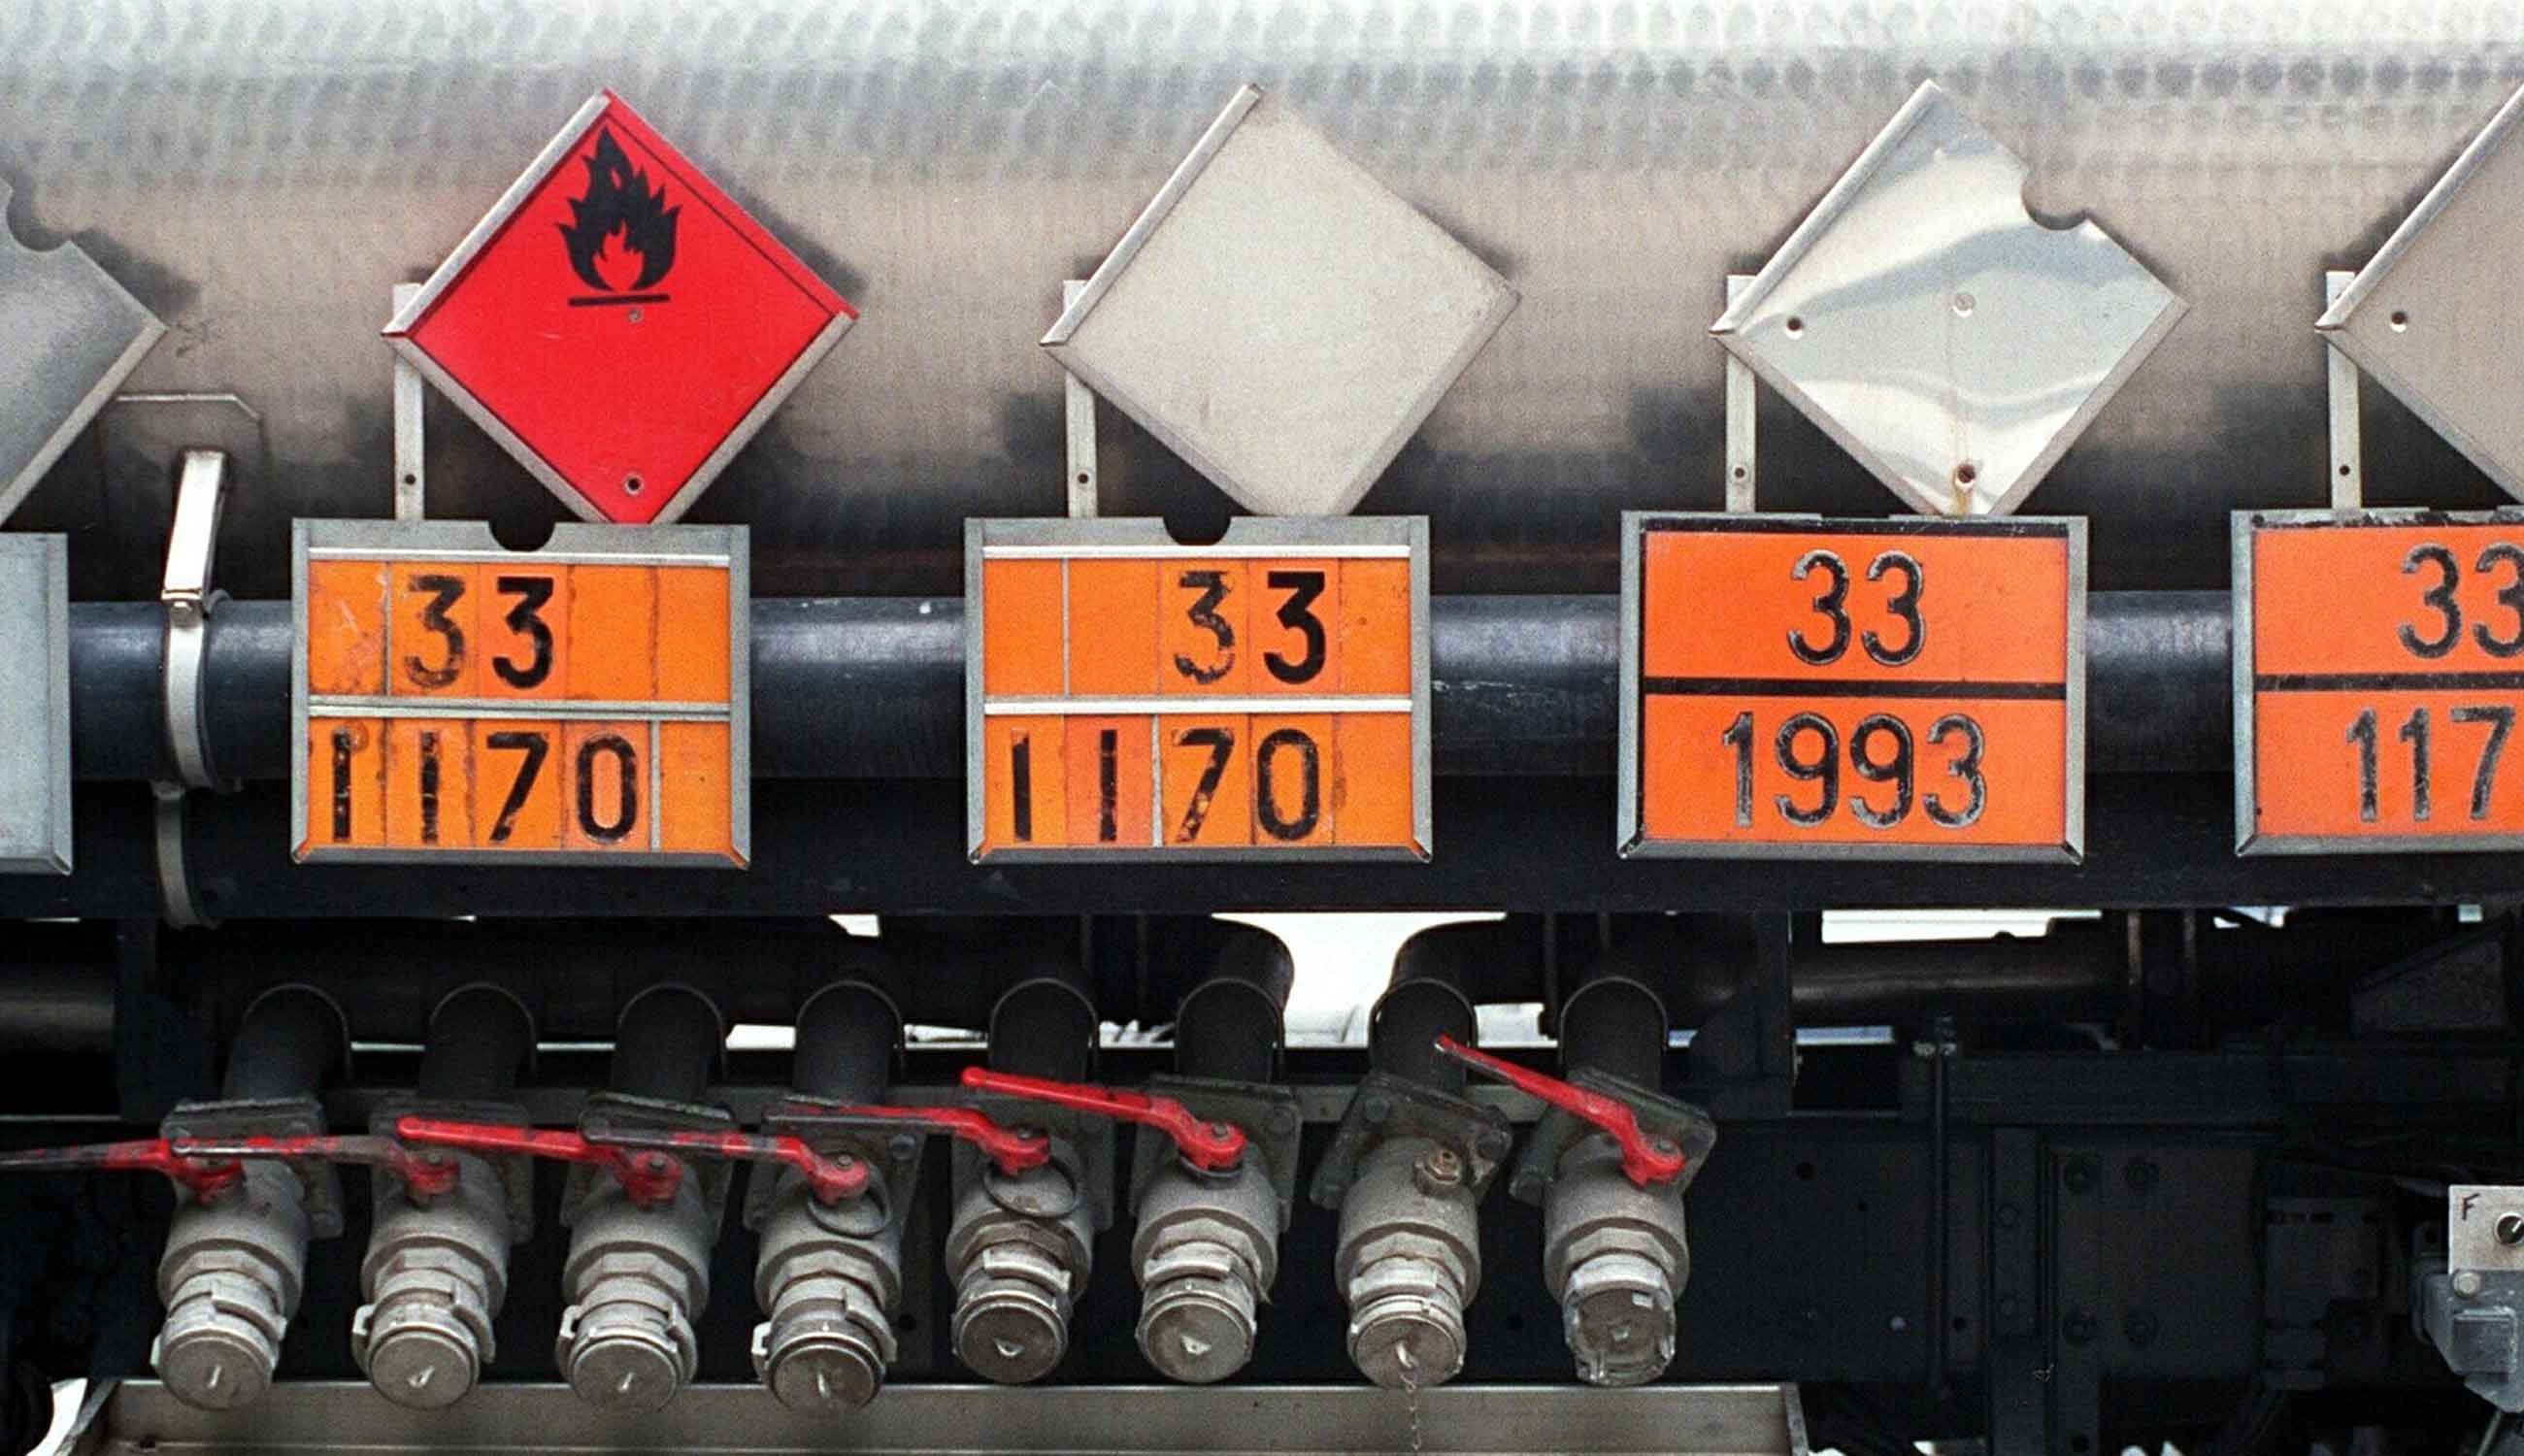 Ulike UN-nummer (identifikator for ulike stoffklasser) tydelige plassert på siden av en tankbil.